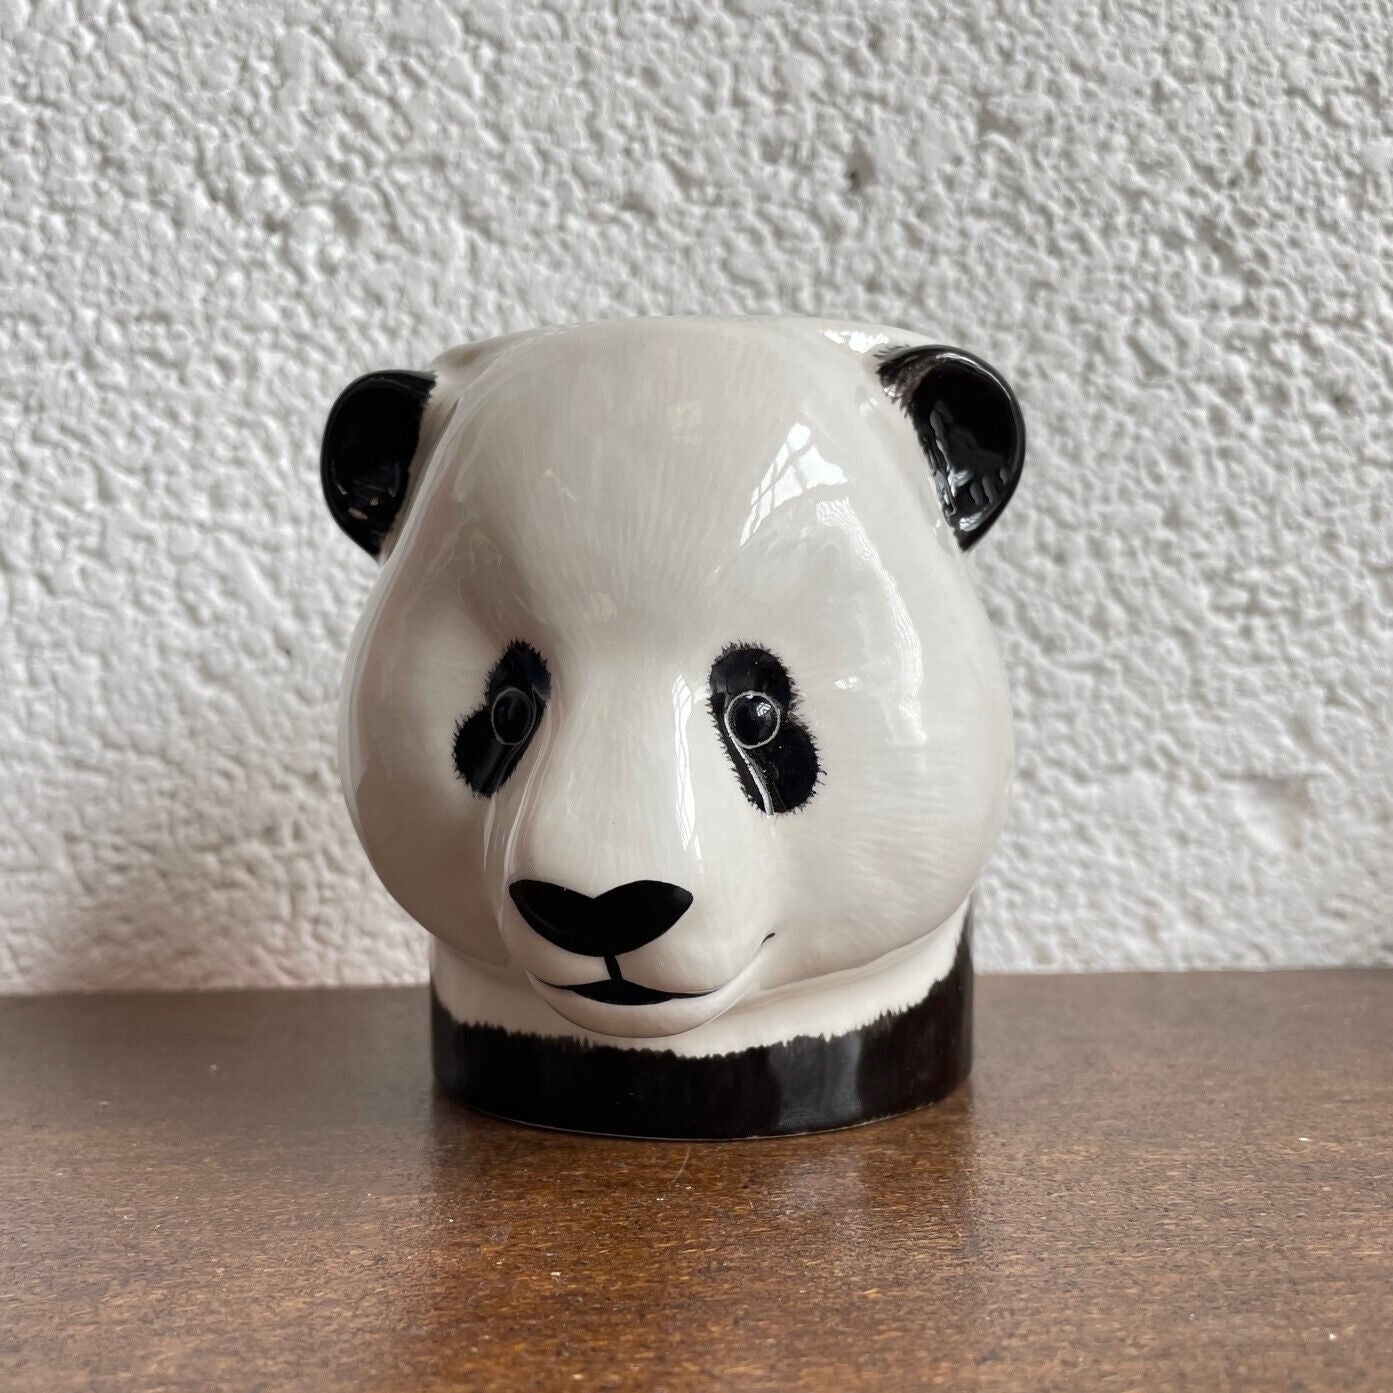 Panda Pencil Pot